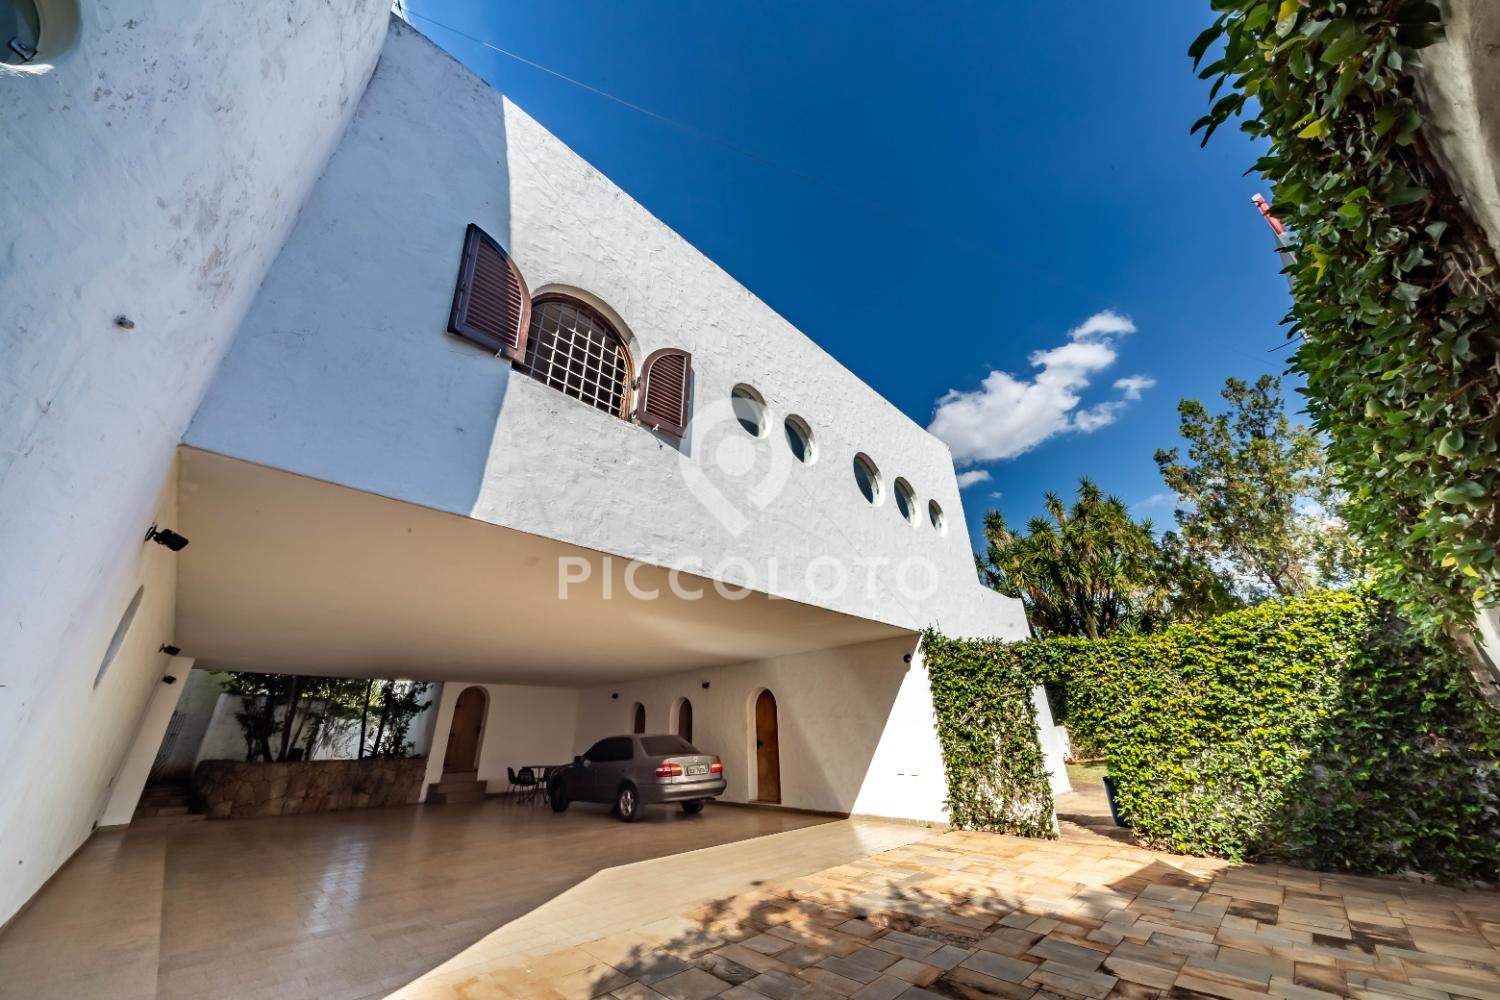 Piccoloto -Casa à venda no Cidade Universitária em Campinas